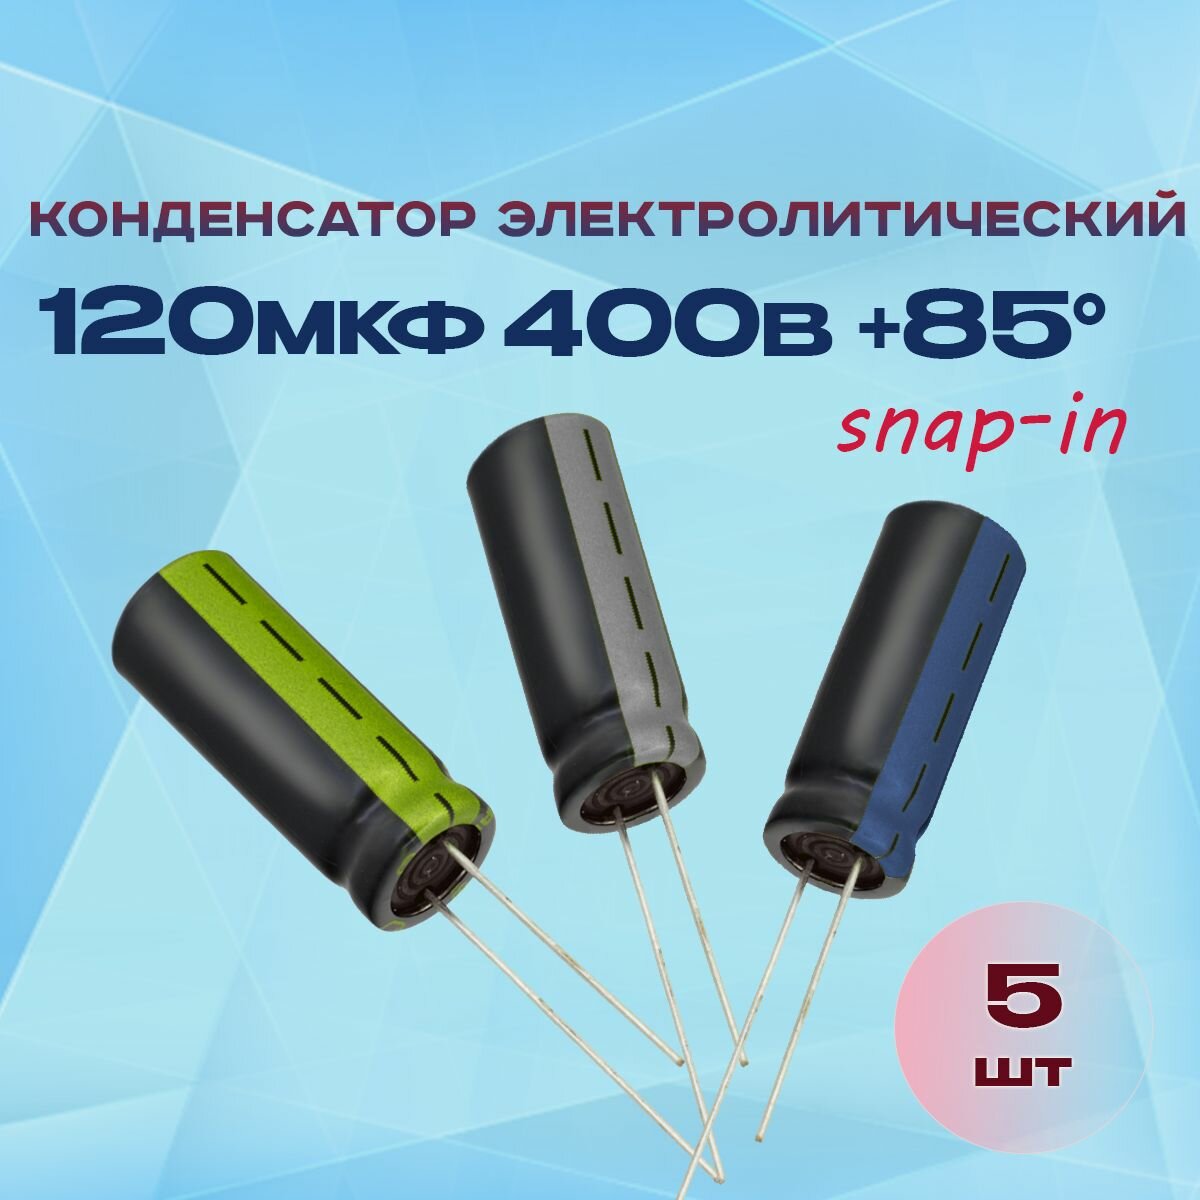 Конденсатор электролитический 120МКФХ400В +85 (snap-in) 5 шт.